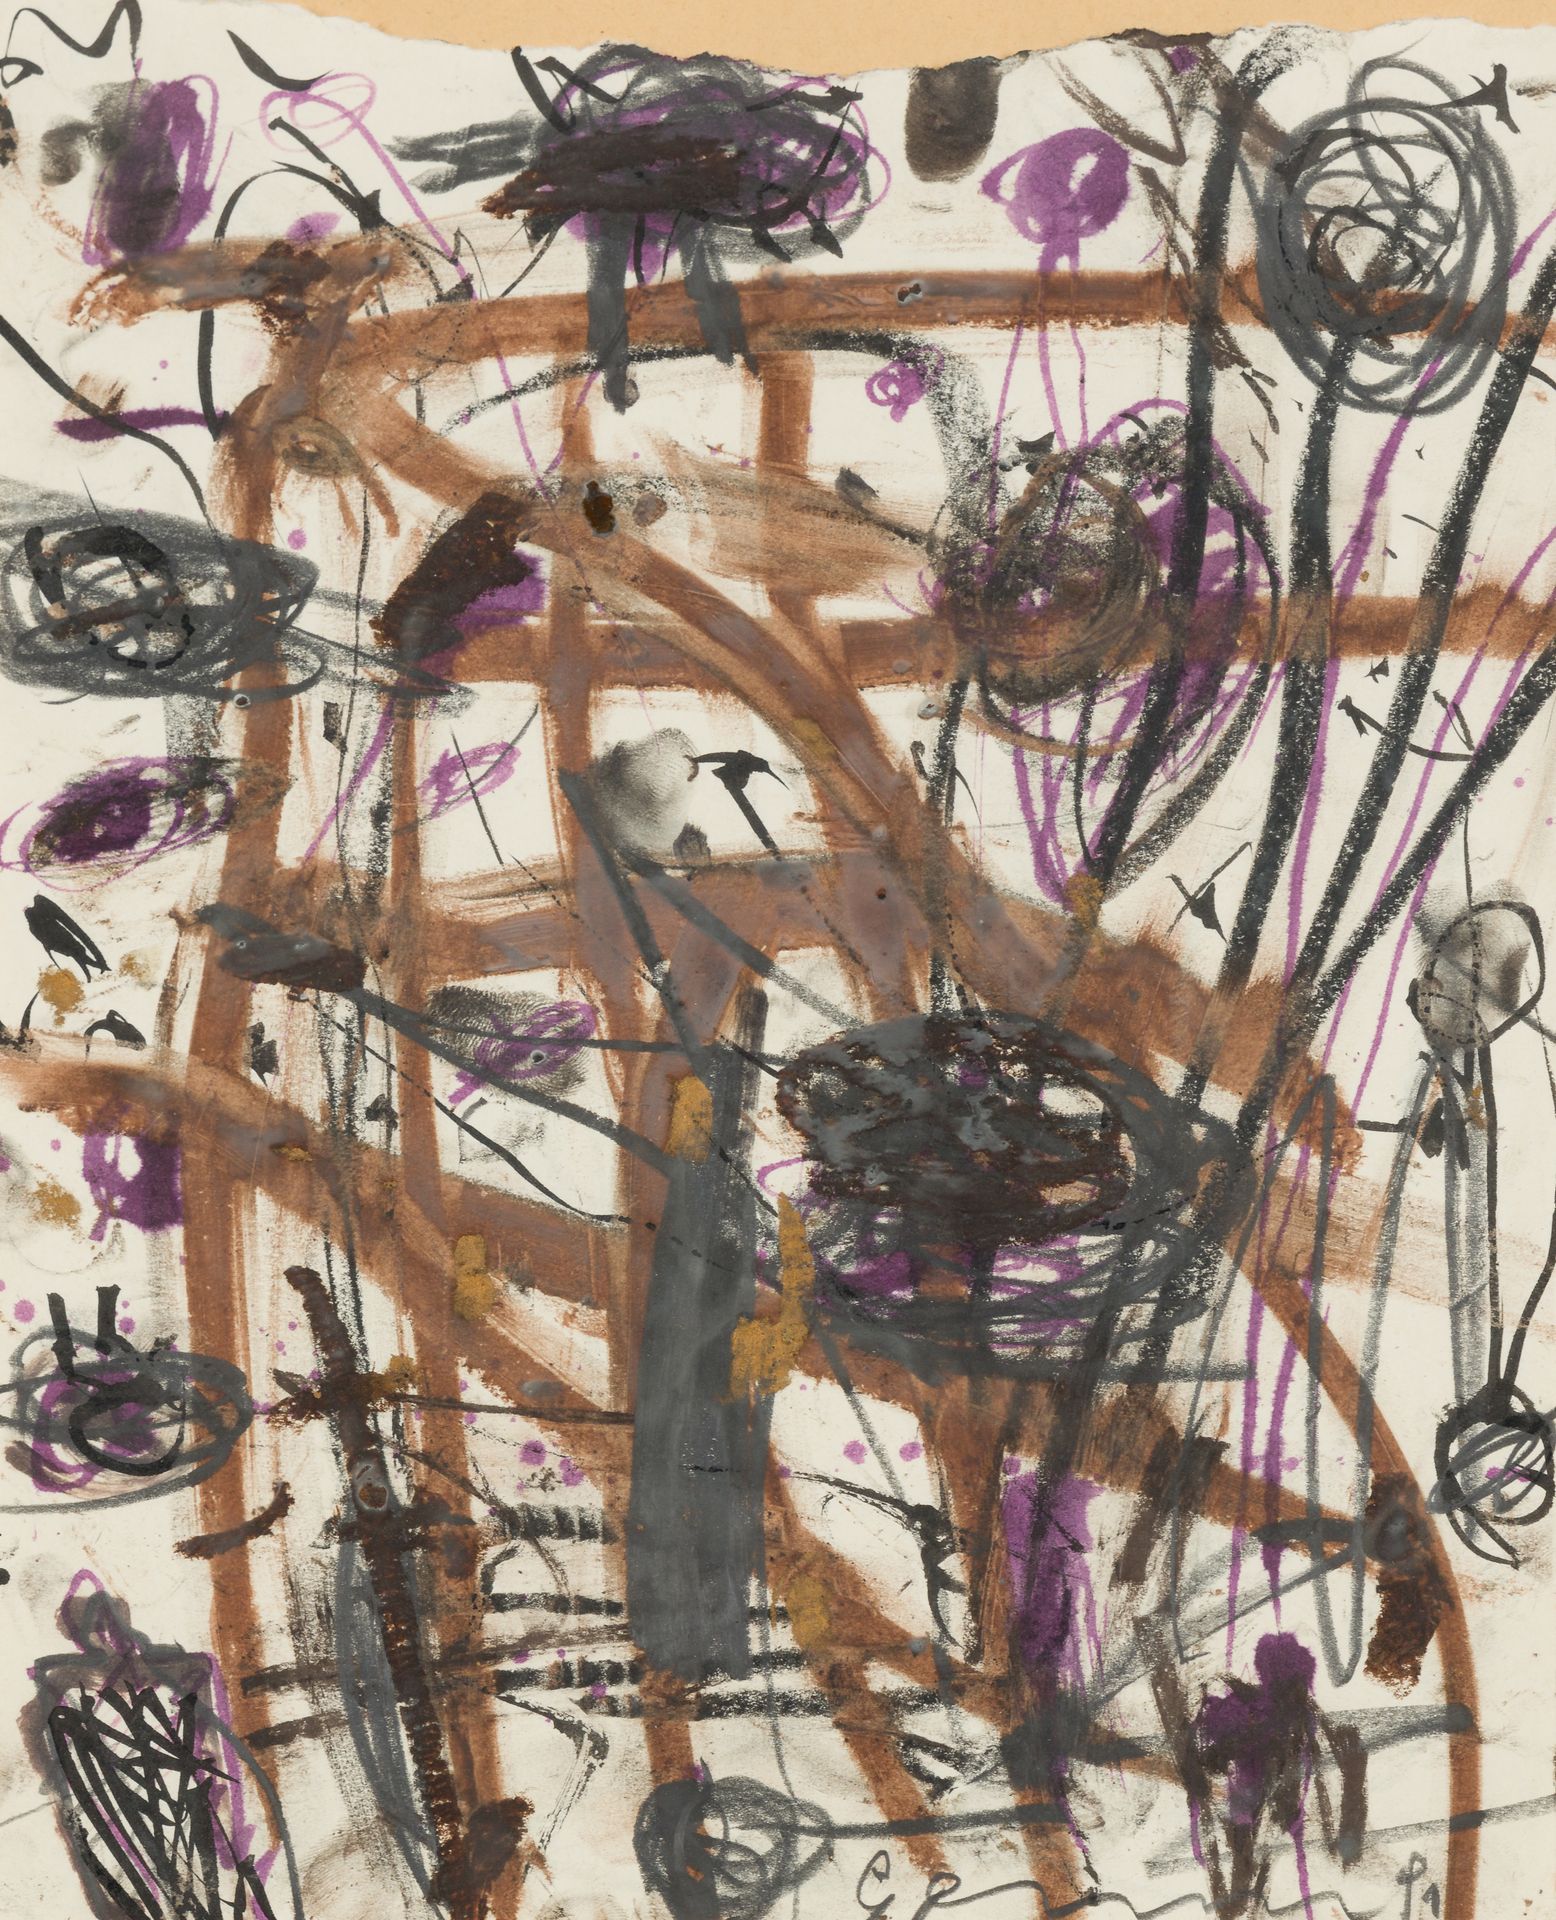 Damisch, Gunter 无题》，1991年
纸上铅笔、彩色铅笔和粉笔
右下方有签名和日期
32 x 26 cm
有框架的